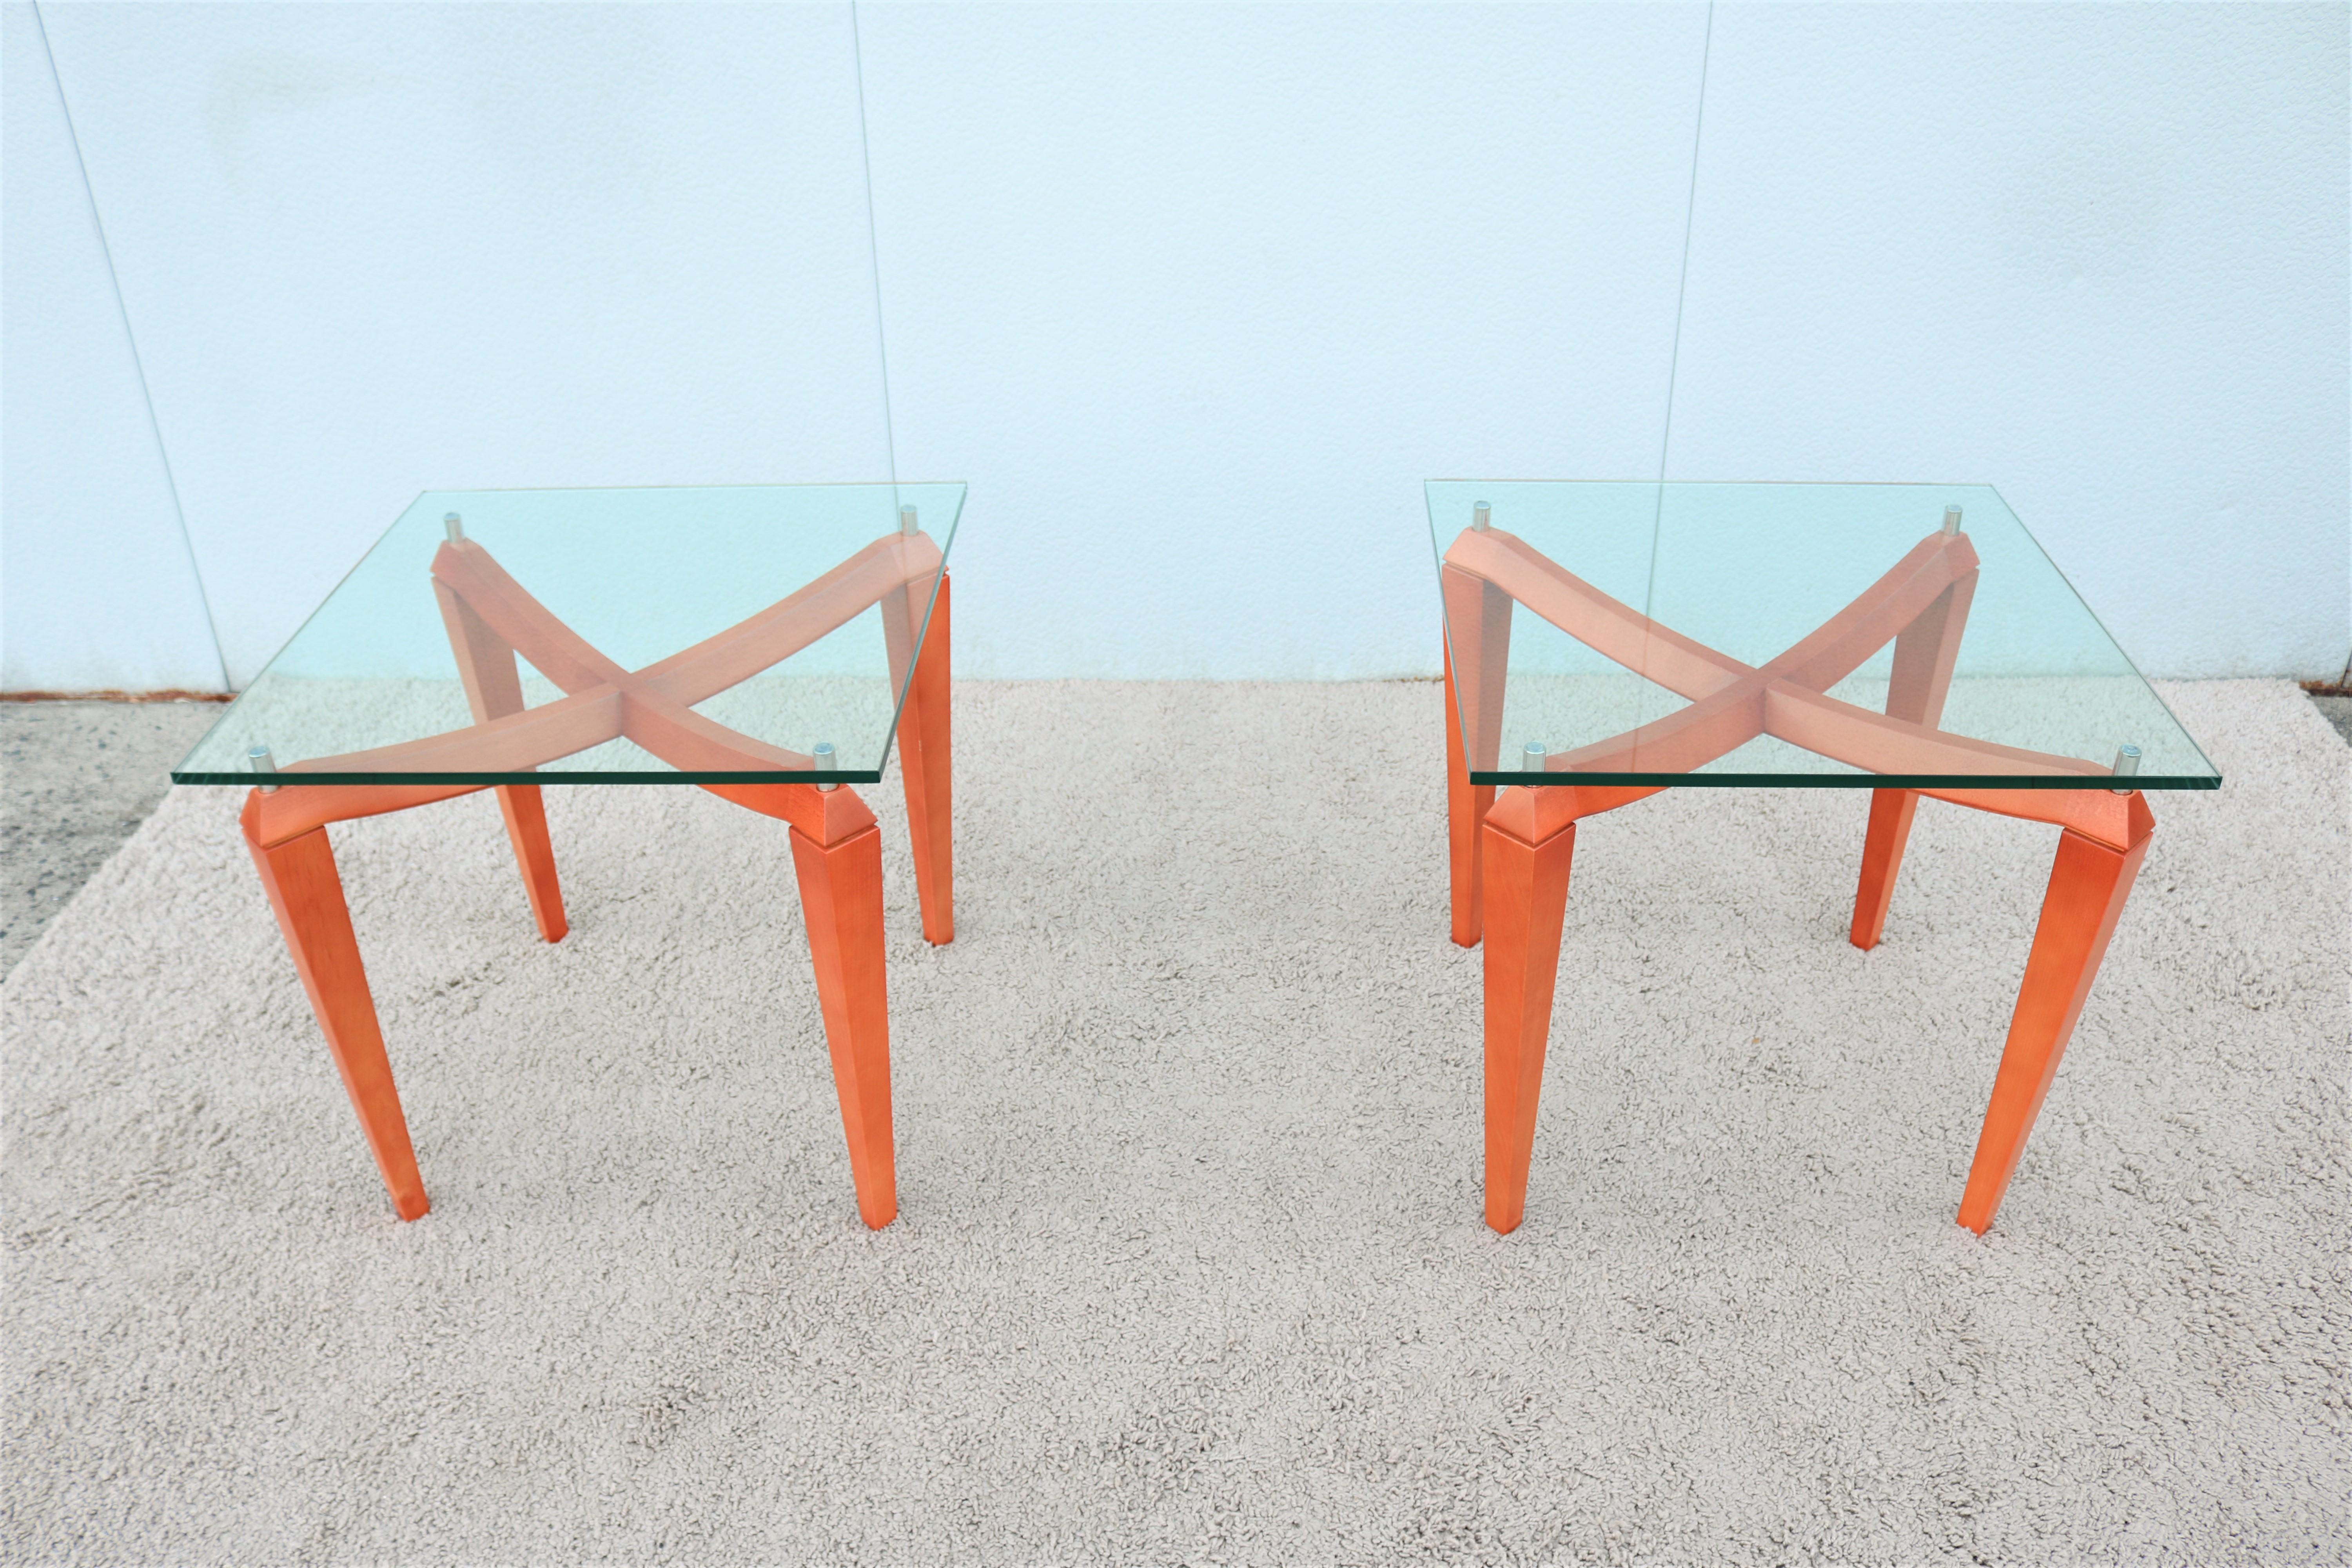 Fabelhaftes Paar moderner italienischer quadratischer Beistelltische, inspiriert von skandinavischem Design. 
Diese prächtigen Tische verbinden den gewünschten Luxus mit der erforderlichen Funktionalität.
Die Tischplatte scheint über dem Holzsockel